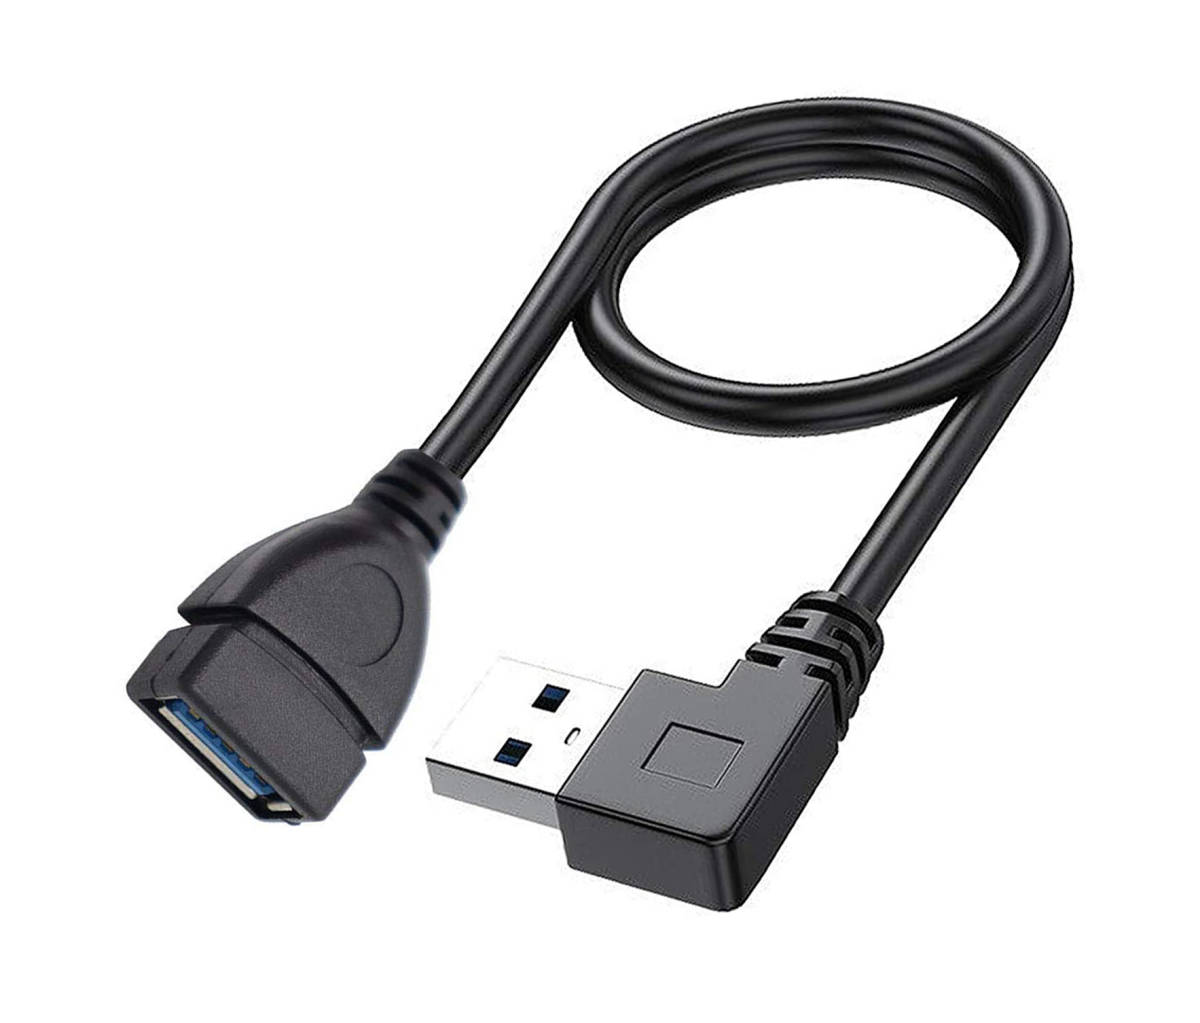 超人気高品質 USB 2.0伸縮ケーブル USB2.0 延長ケーブル Aオス to Aメス 金メッキコネクタ付き 高速 480Mbpsの データ転送同期リード 伸縮調節可能 ばねケーブル